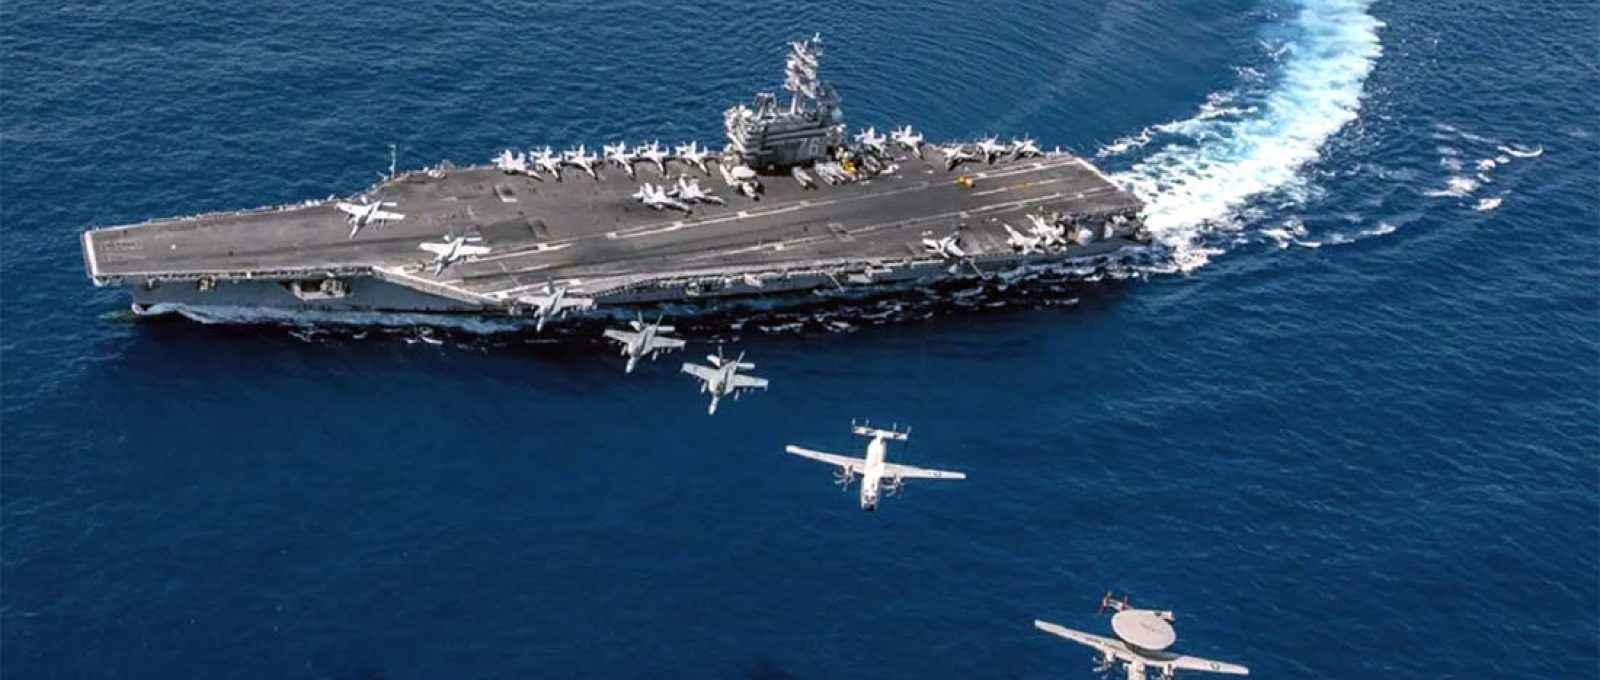 Aeronaves voam em formação sobre o porta-aviões americano USS Ronald Reagan, no Mar do Sul da China (Kaila V Peters/Marinha dos EUA).